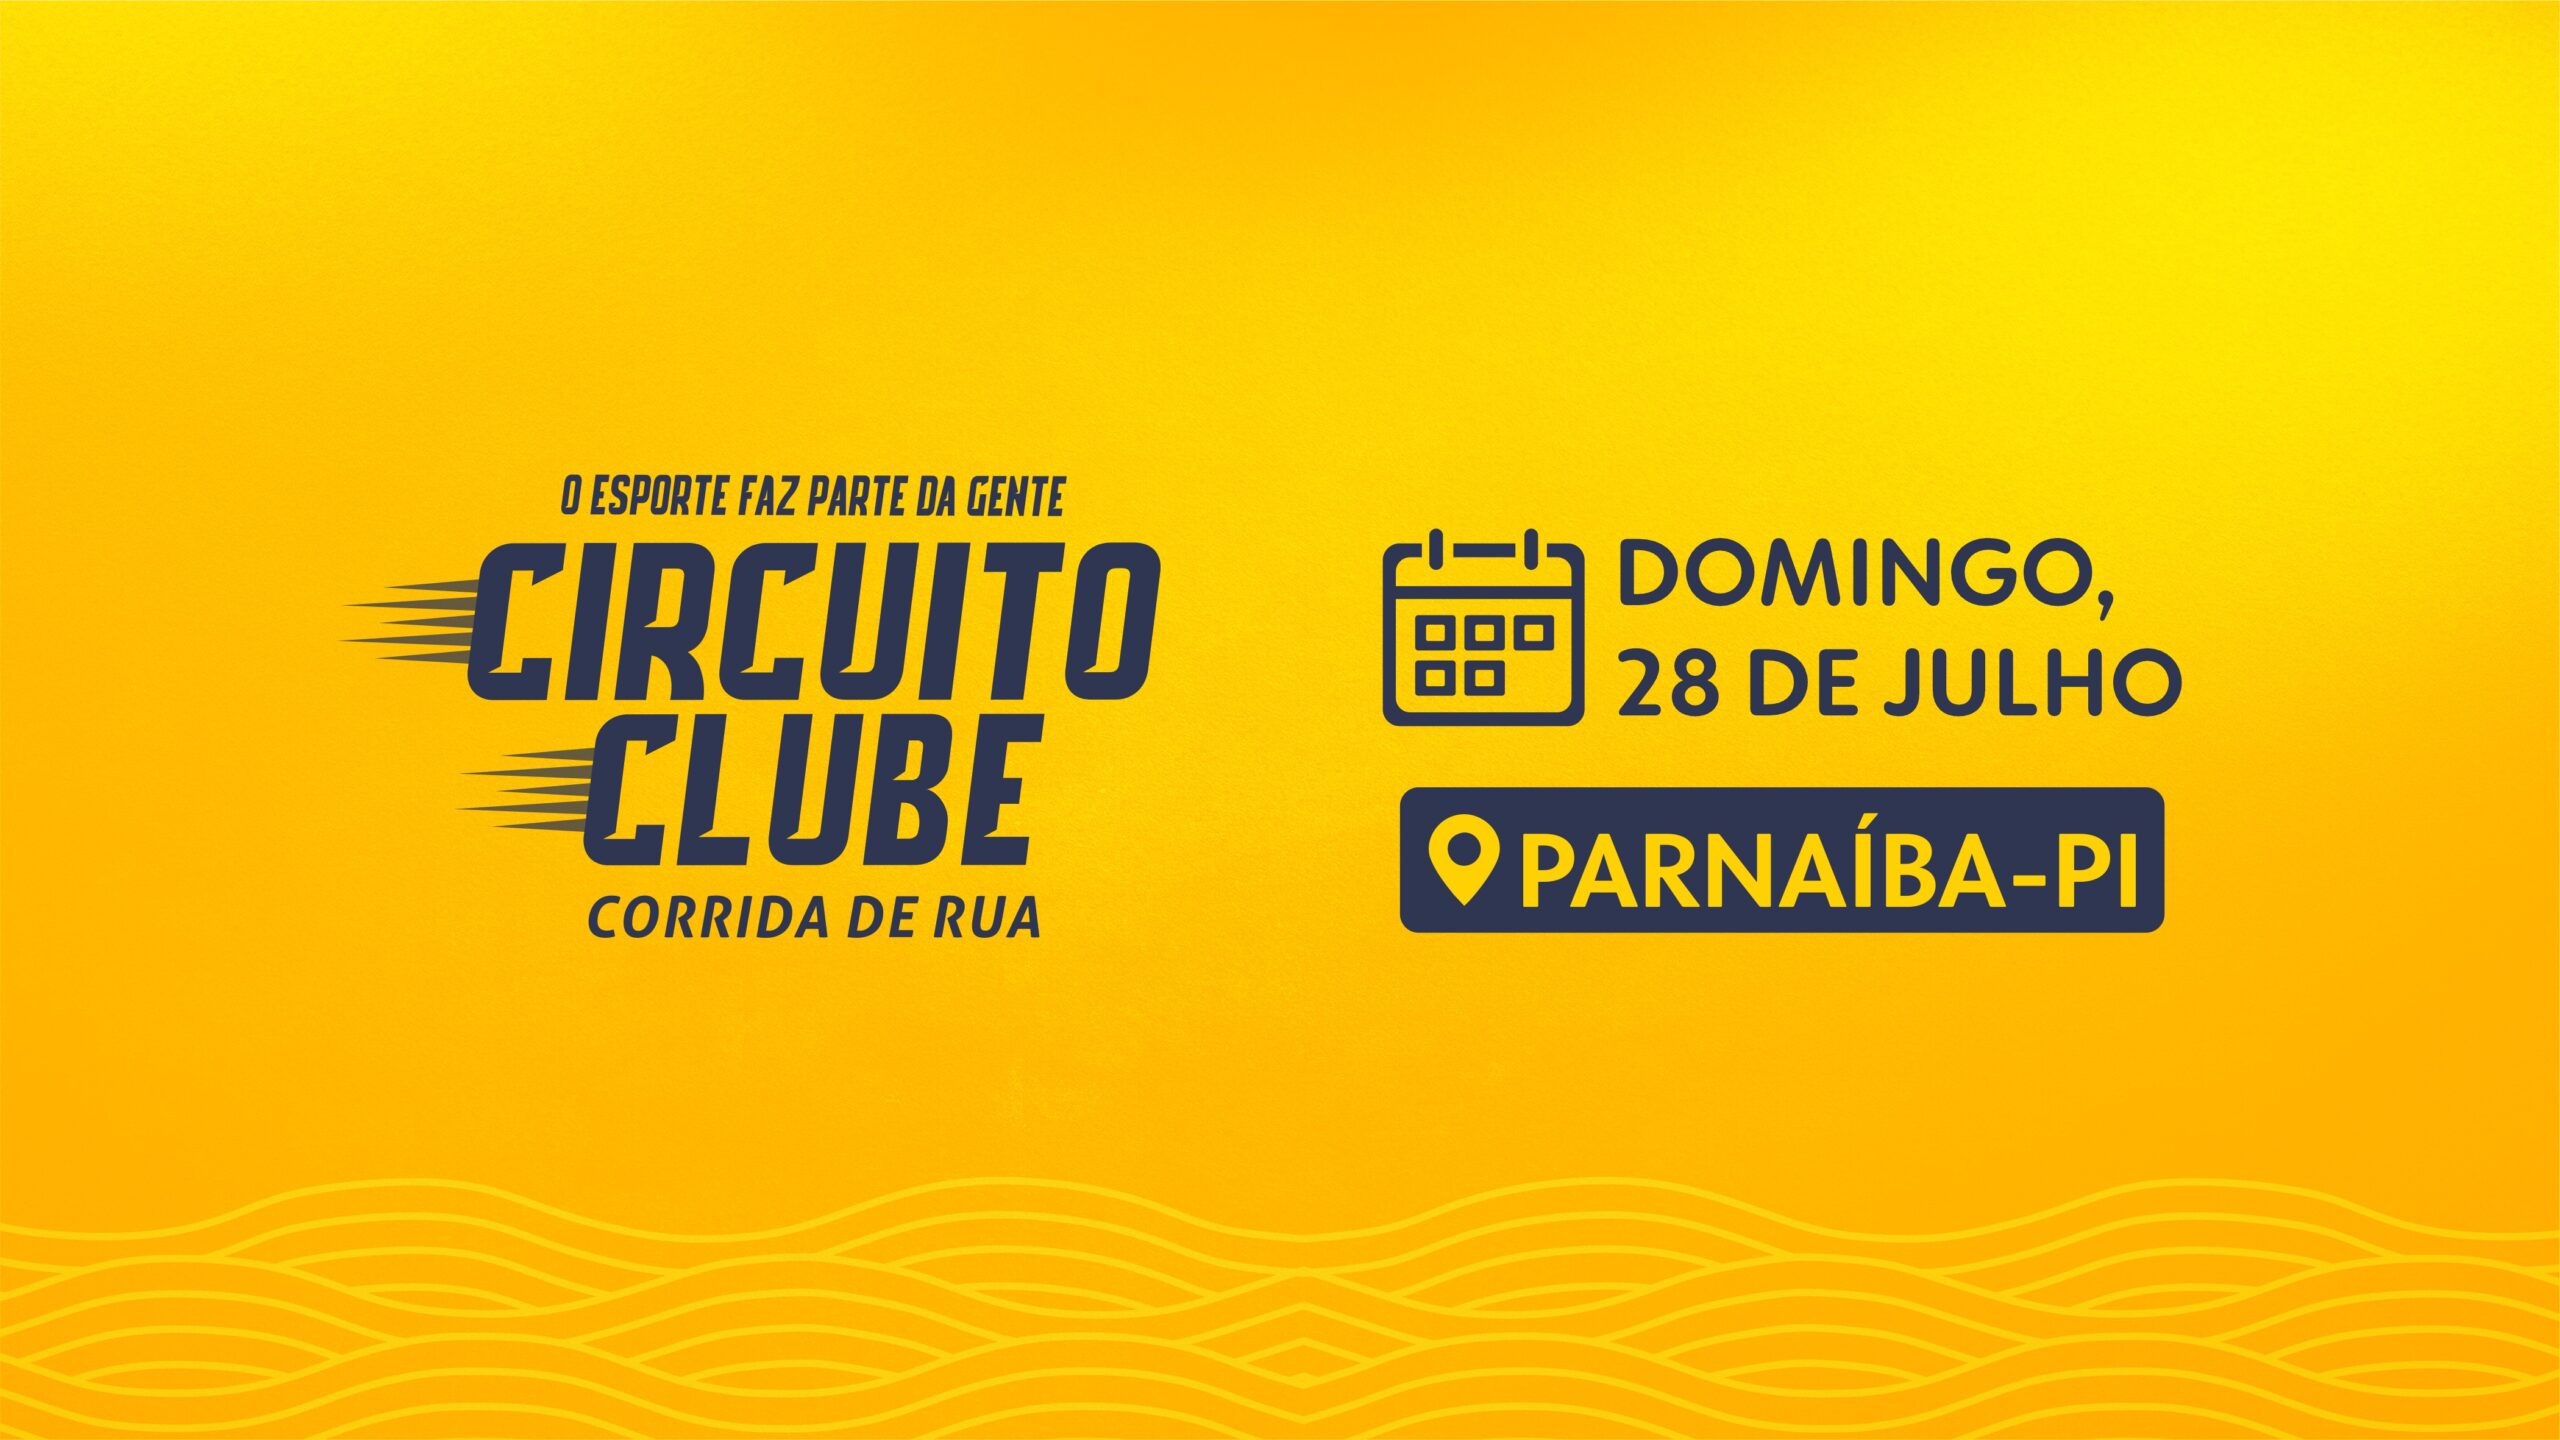 Rede Clube lança 1ª edição do Circuito Clube Corrida de Rua em Parnaíba